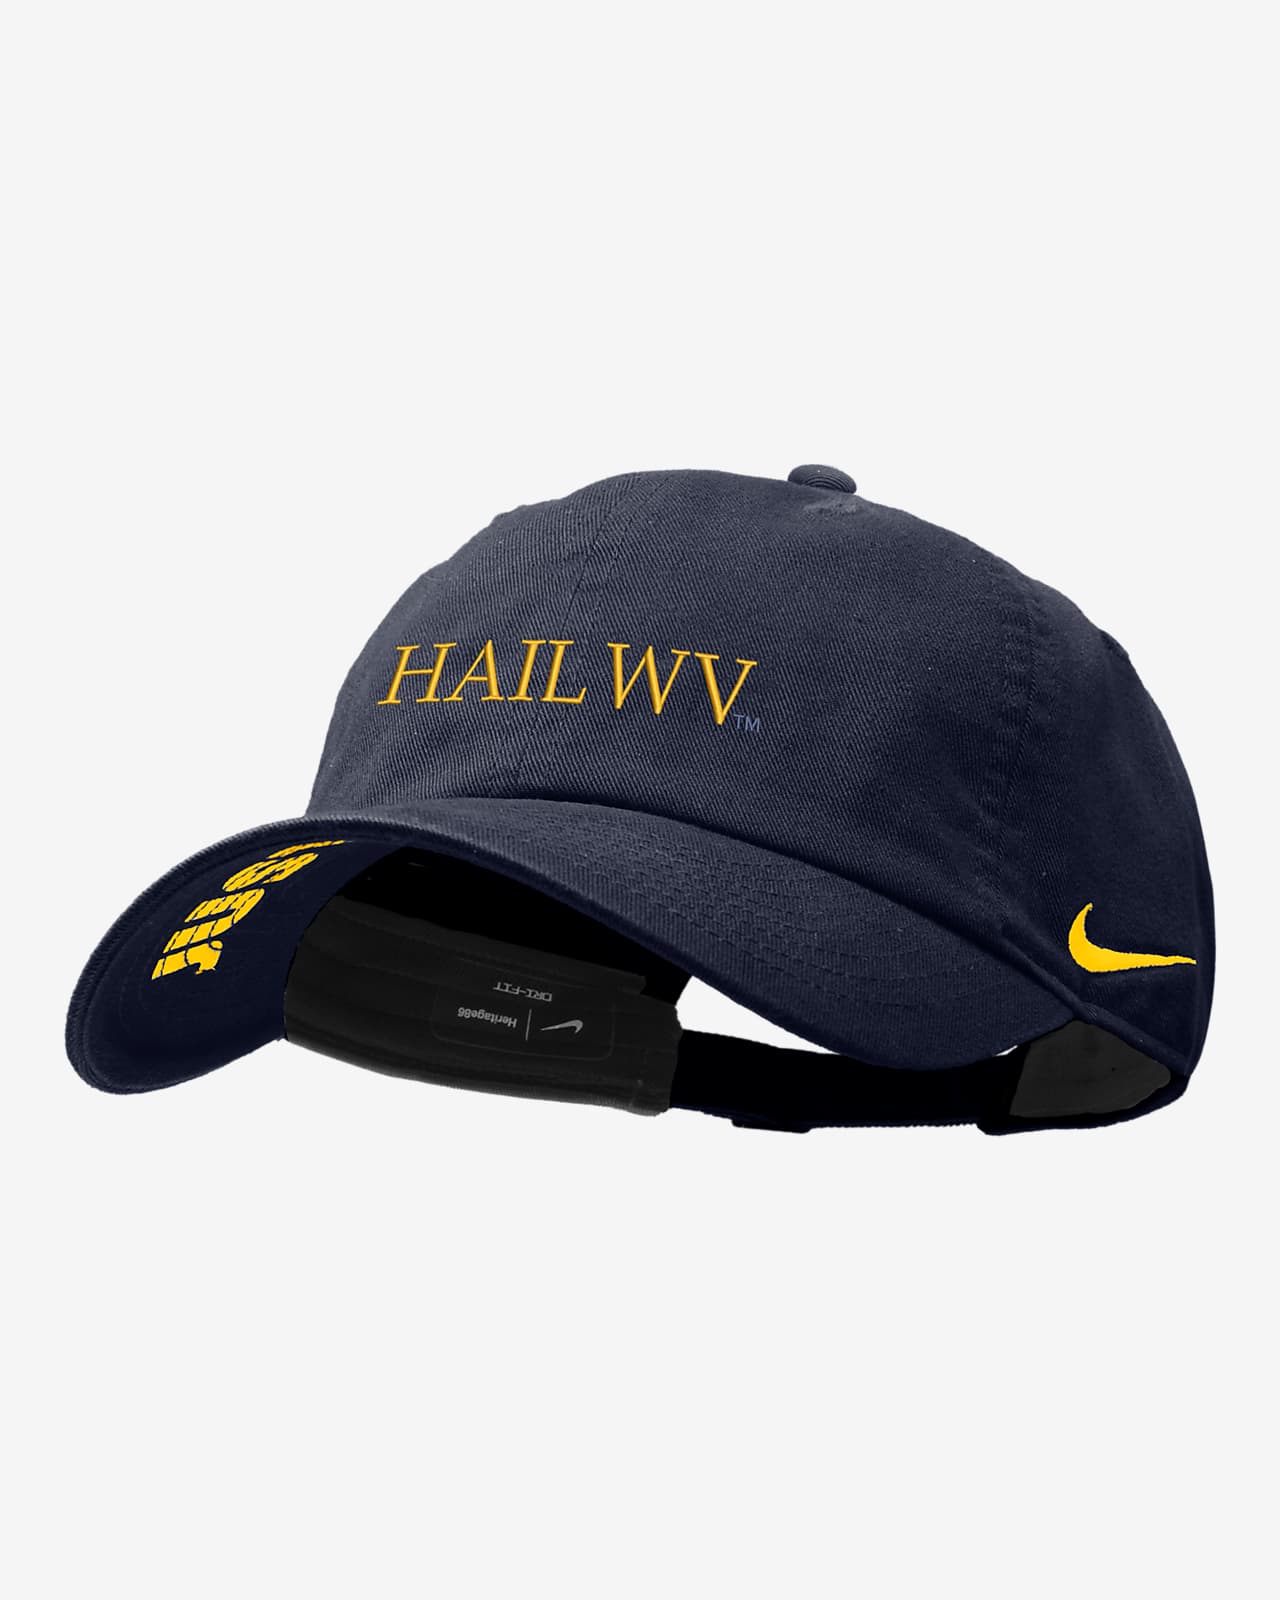 West Virginia Nike College Cap